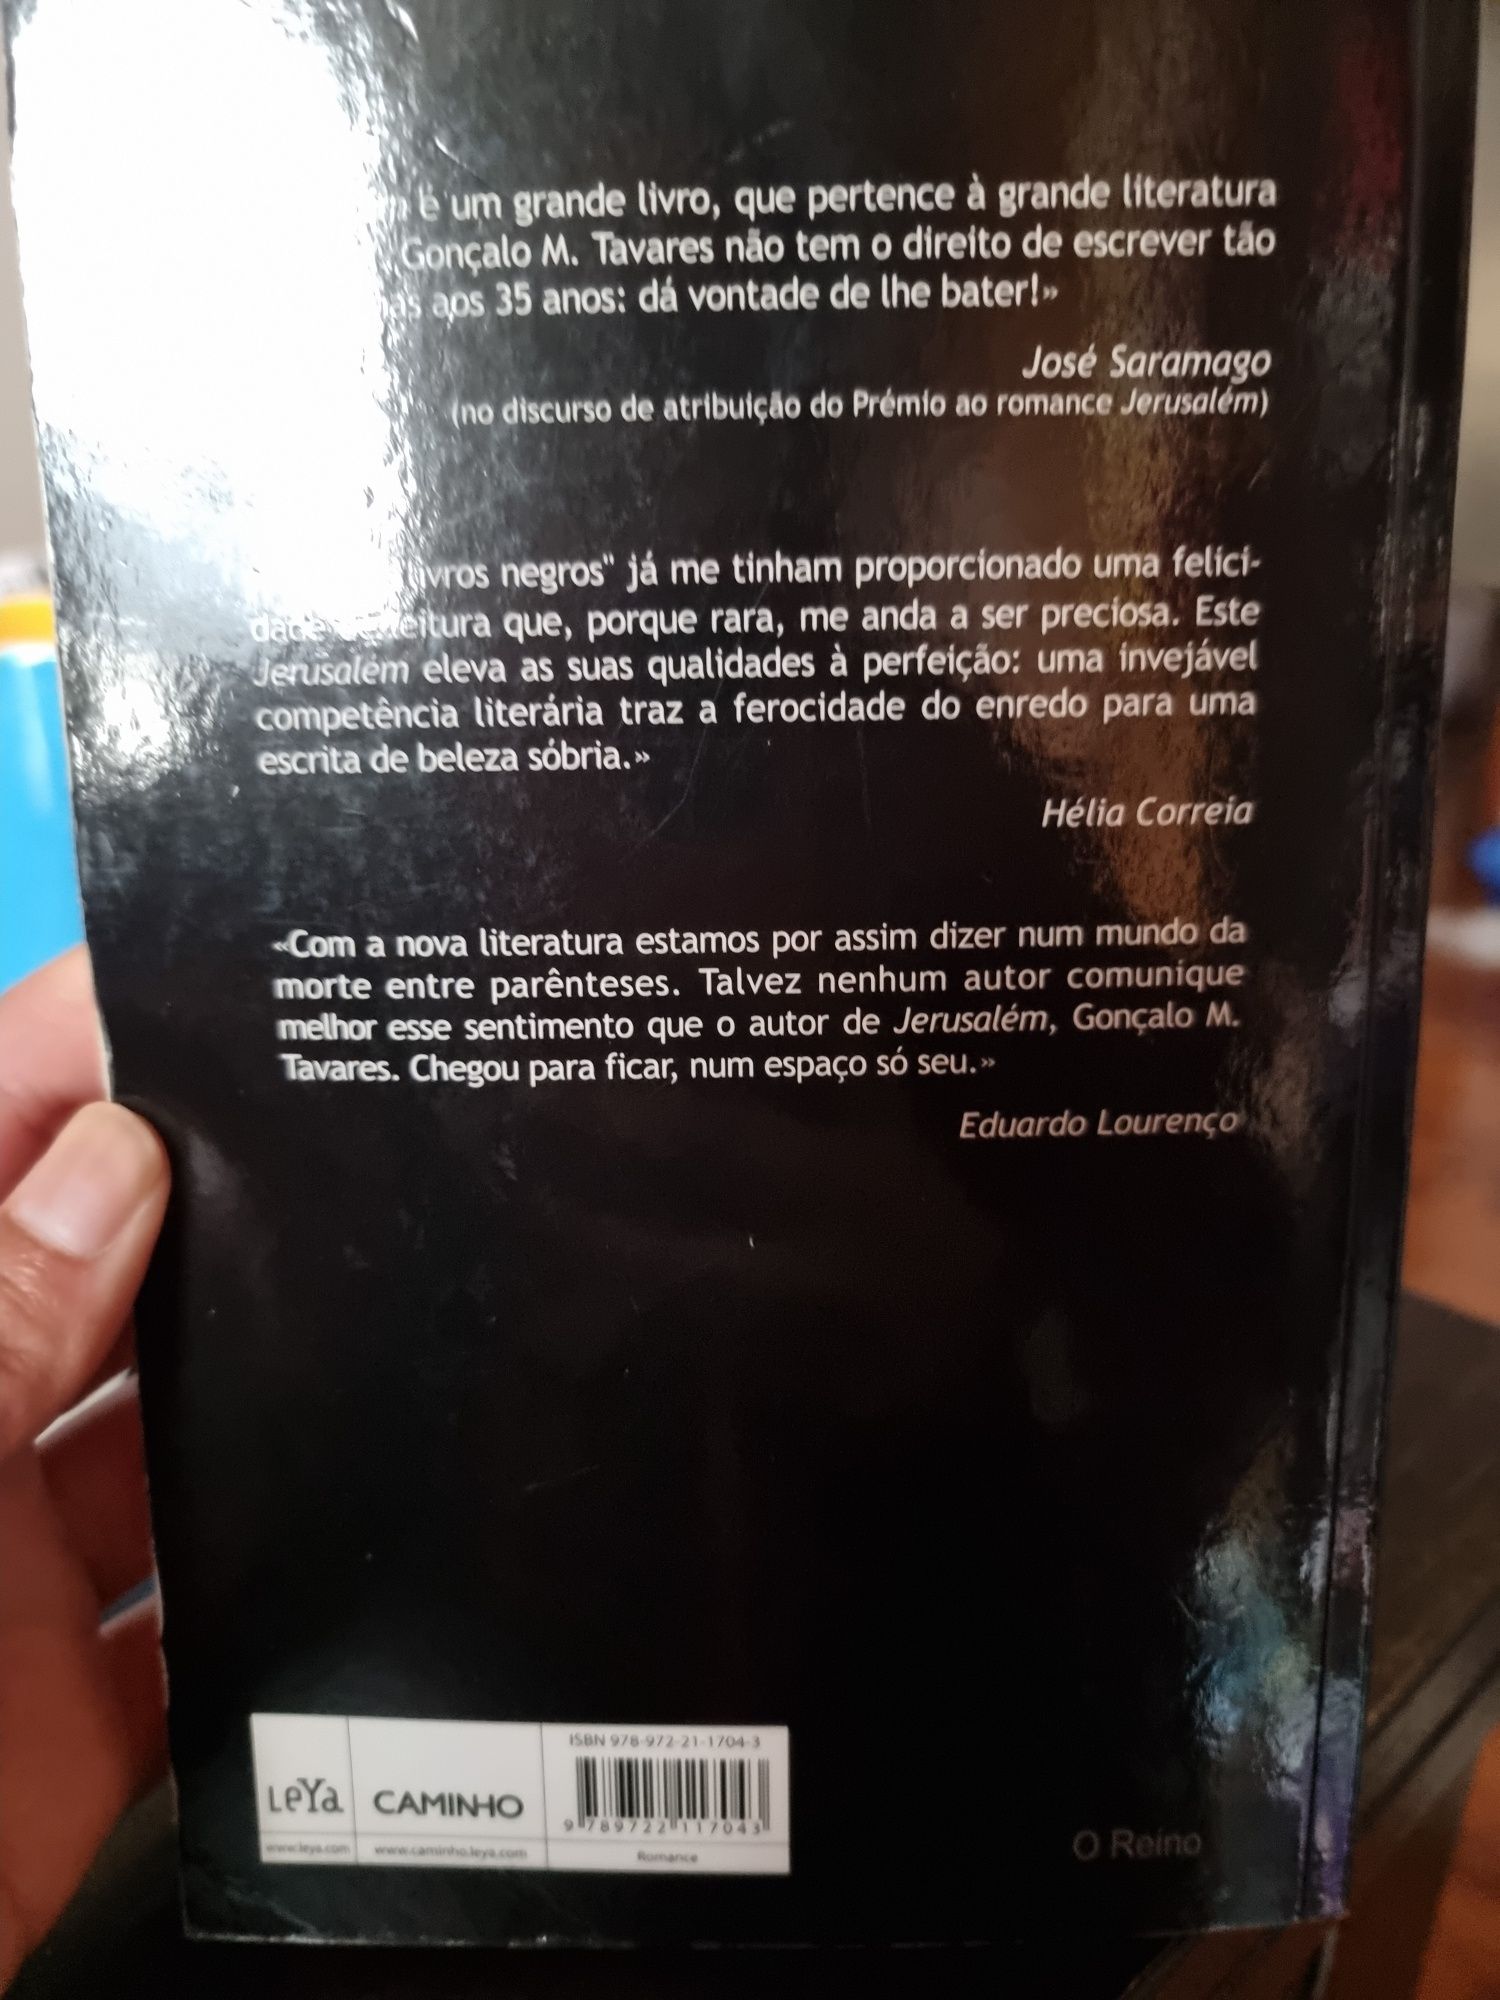 Livro "Jerusalém", Gonçalo M Tavares
Em português. Como novo